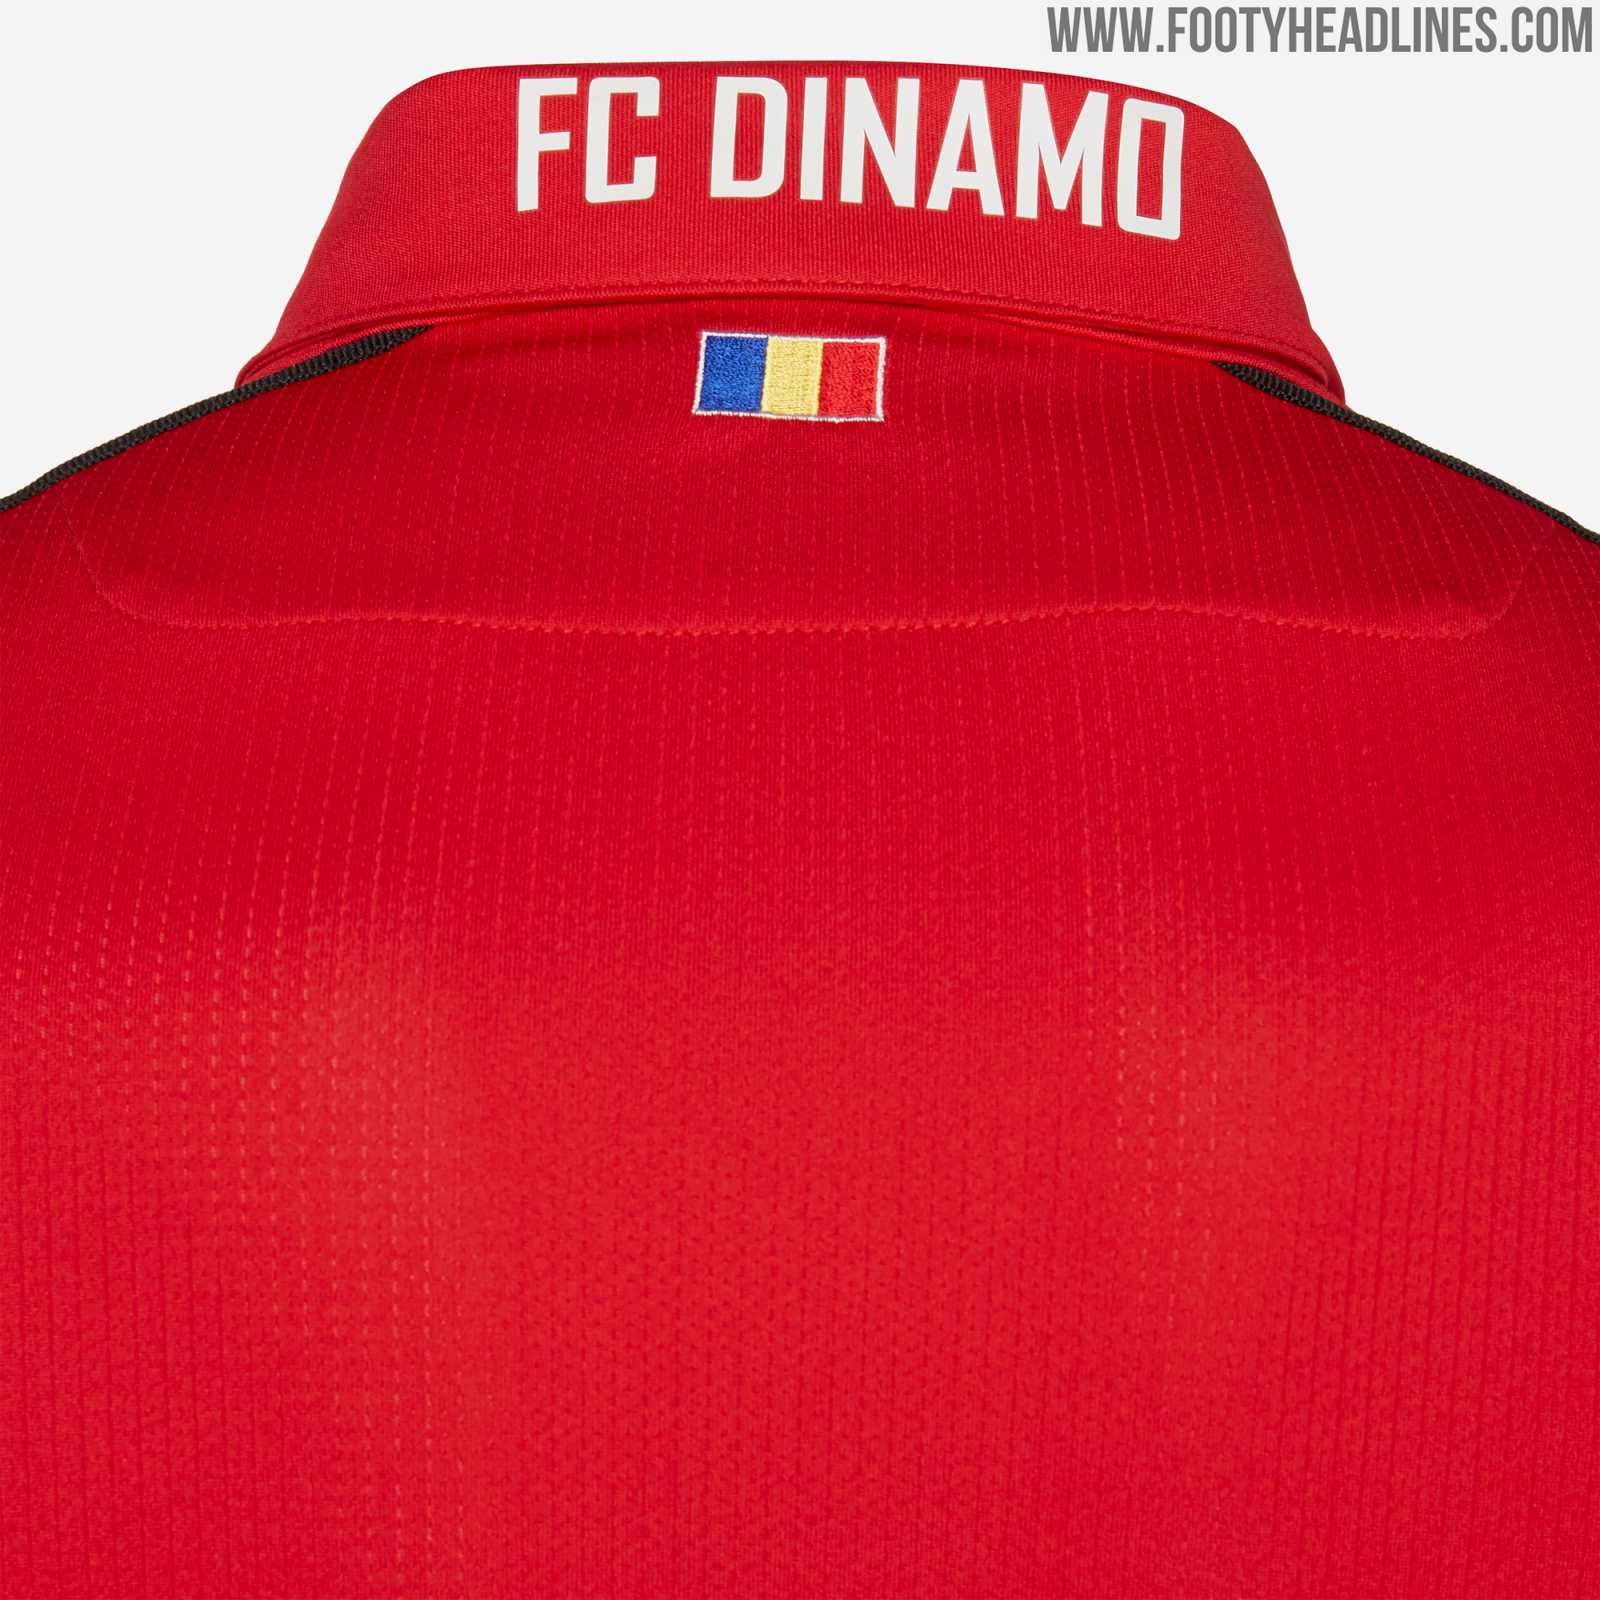 Dinamo Bucareste – 2019/20 – Armário da Bola